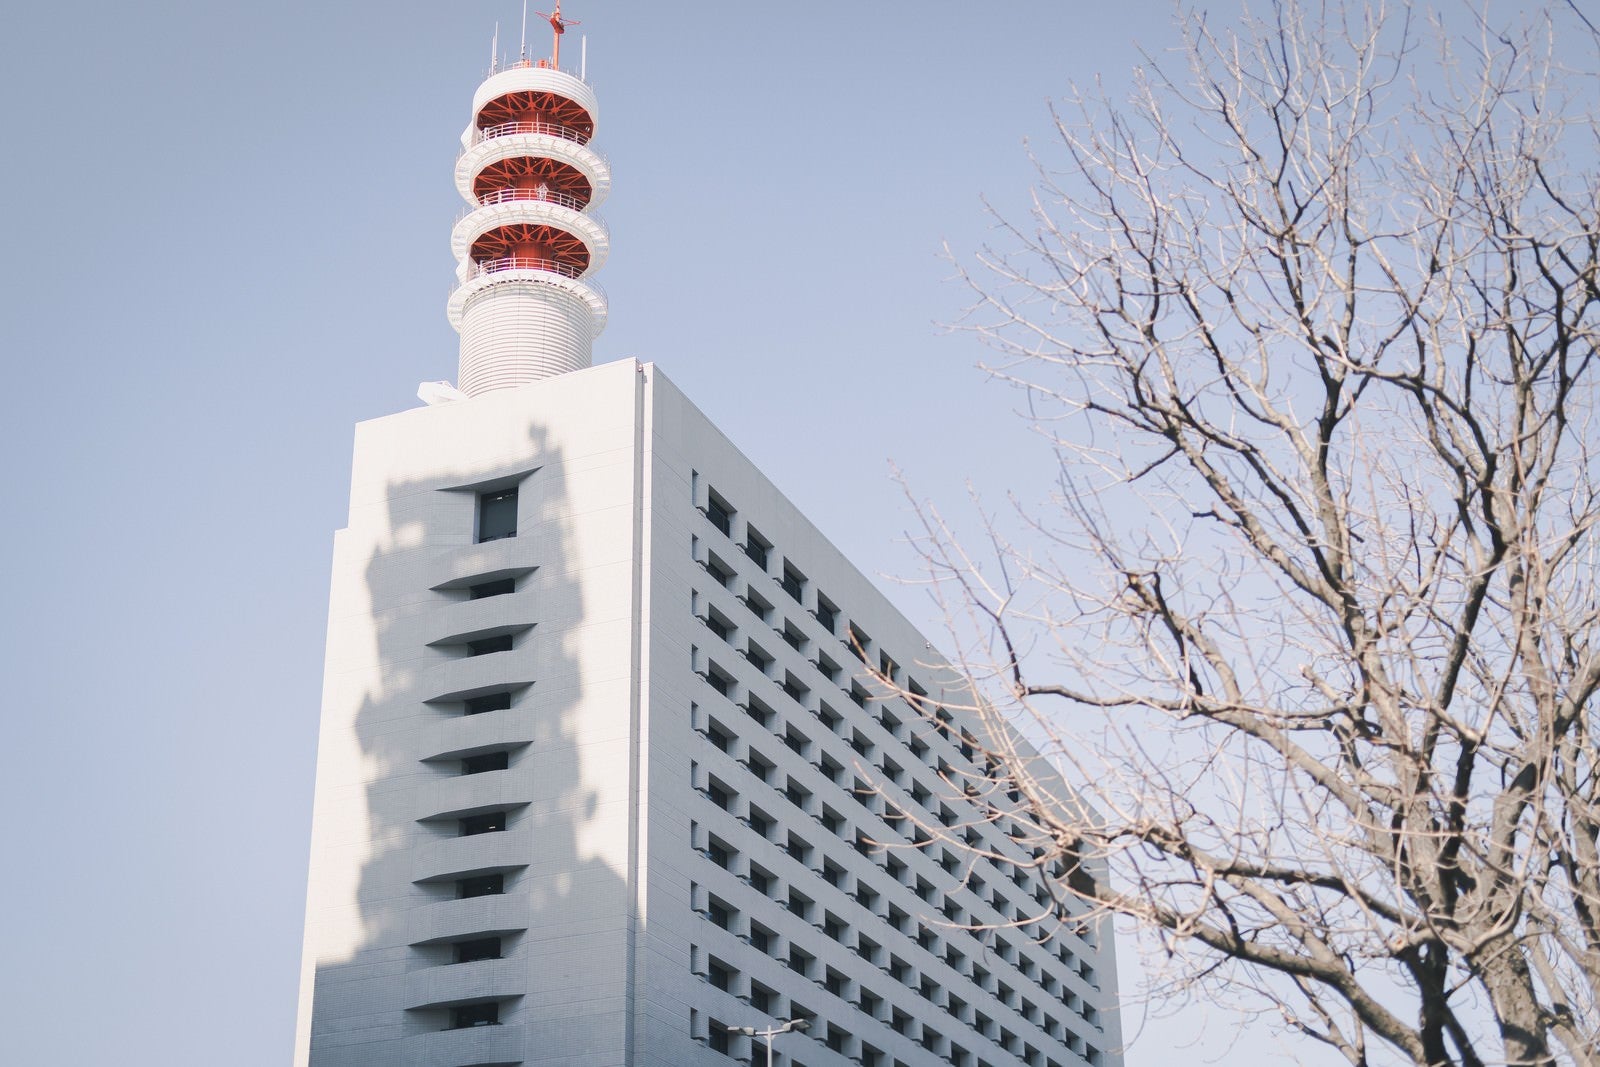 「警視庁の屋上に立つアンテナ塔」の写真